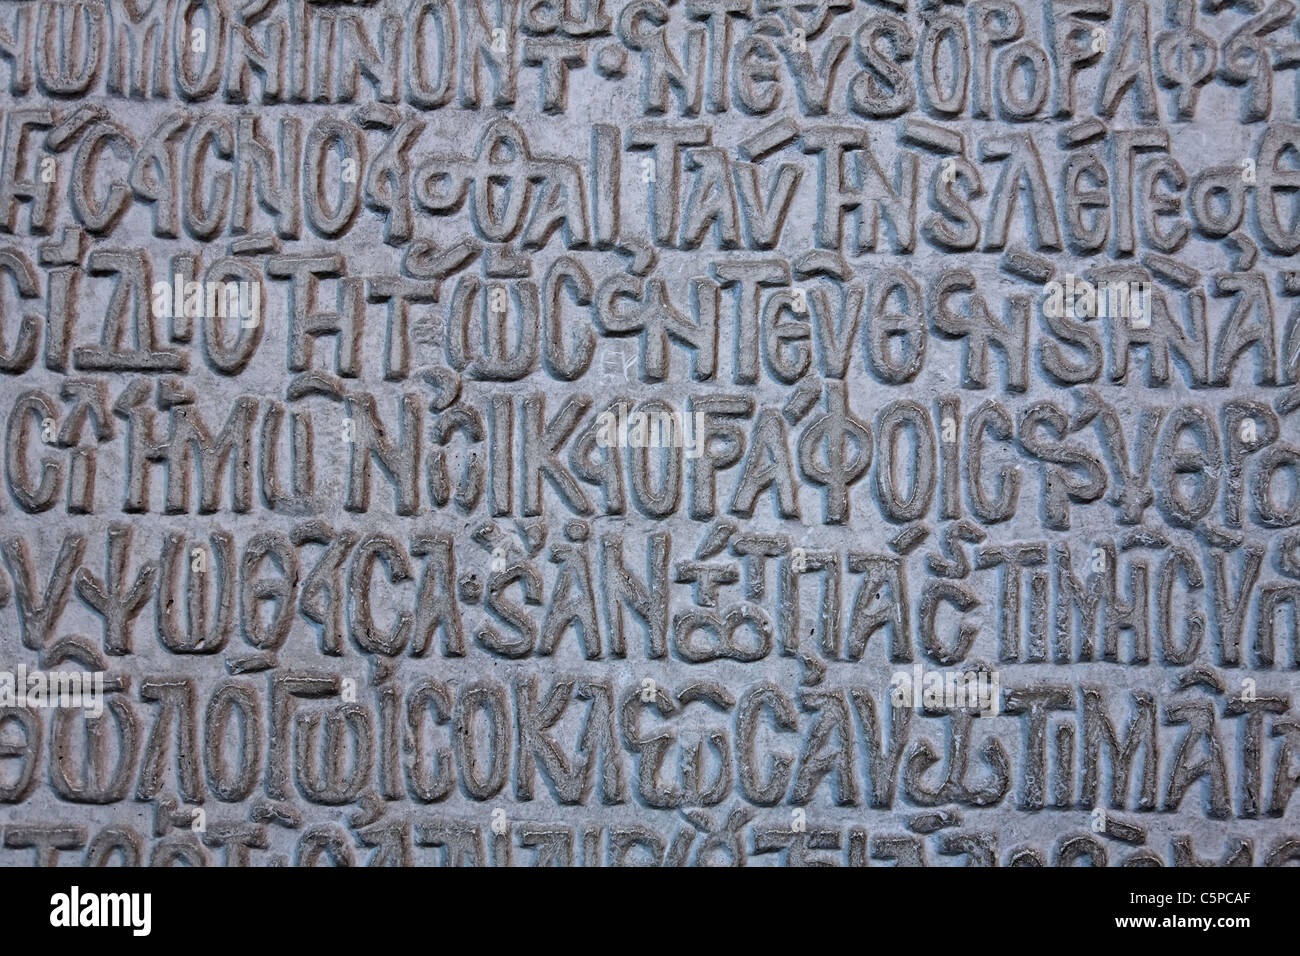 Turquie - Istanbul - lettres sculptées sur un mur à l'intérieur du musée Sainte-Sophie Banque D'Images